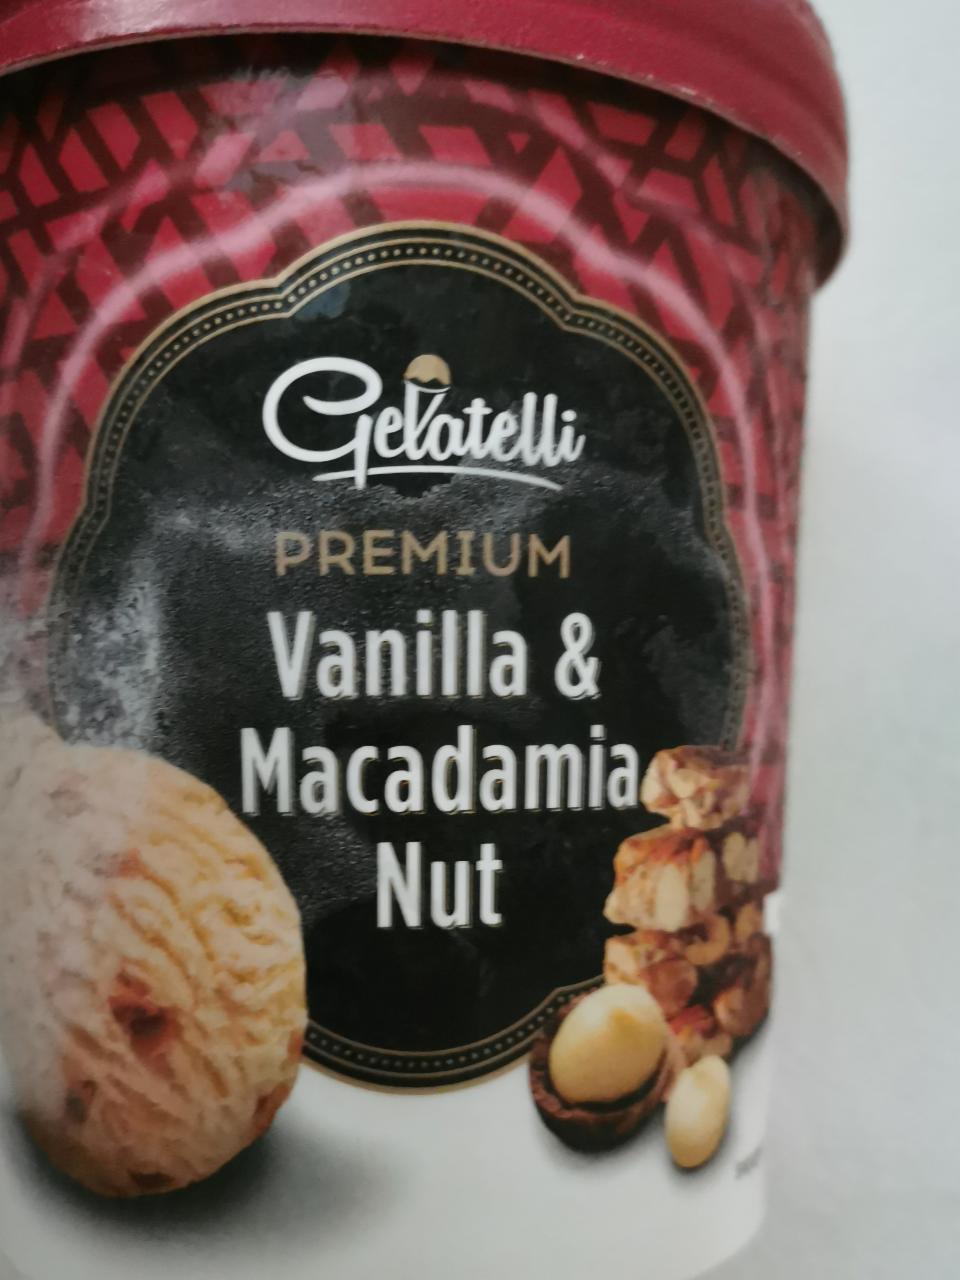 Képek - Jégkrém prémium vanilla & macadamia nut Gelatelli